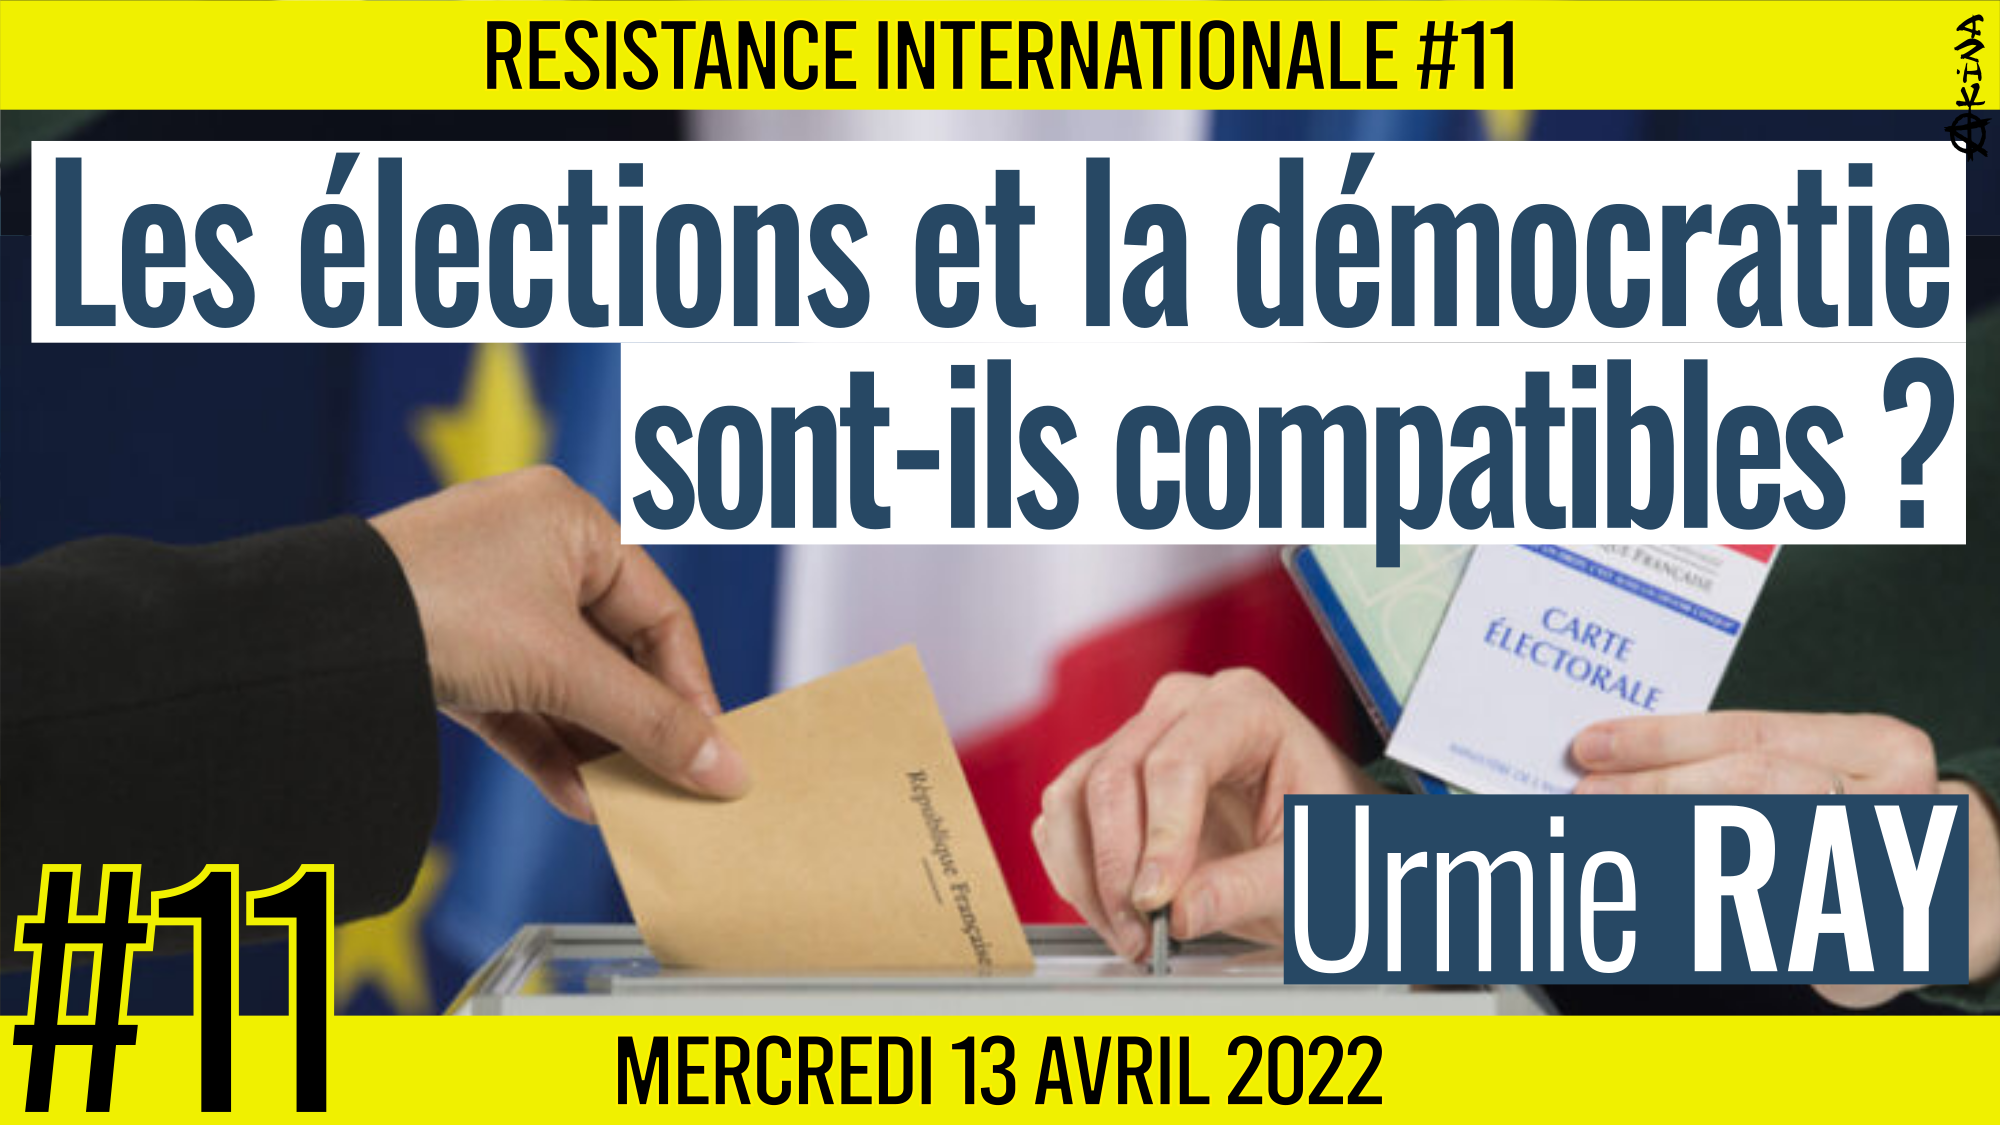 ✊ RÉSISTANCE INTERNATIONALE #11 🗣 Urmie RAY 🎯 Les élections et la démocratie sont-elles compatibles ? 📆 13-04-2022